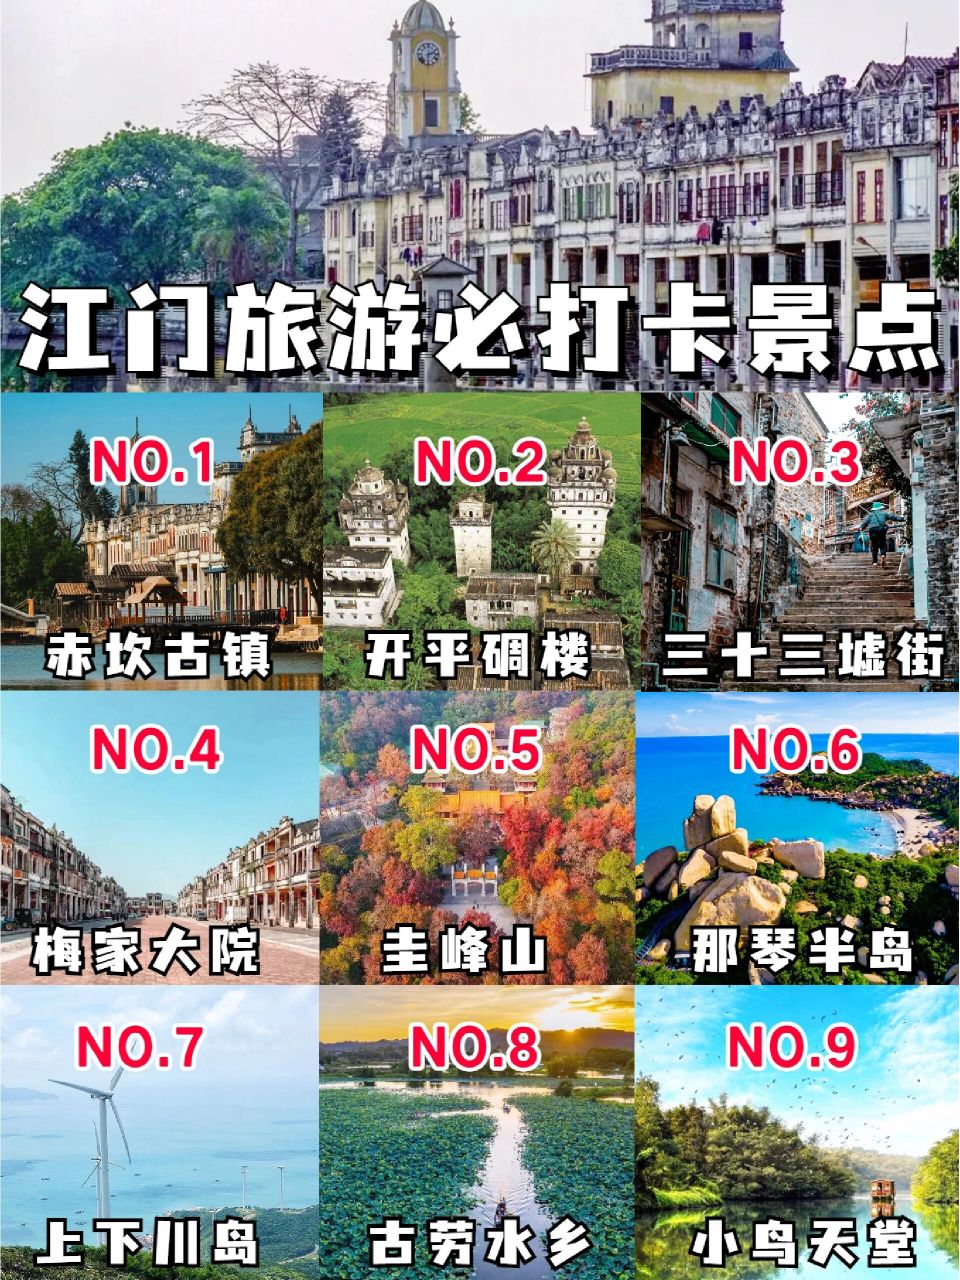 江门旅游景点排行榜图片